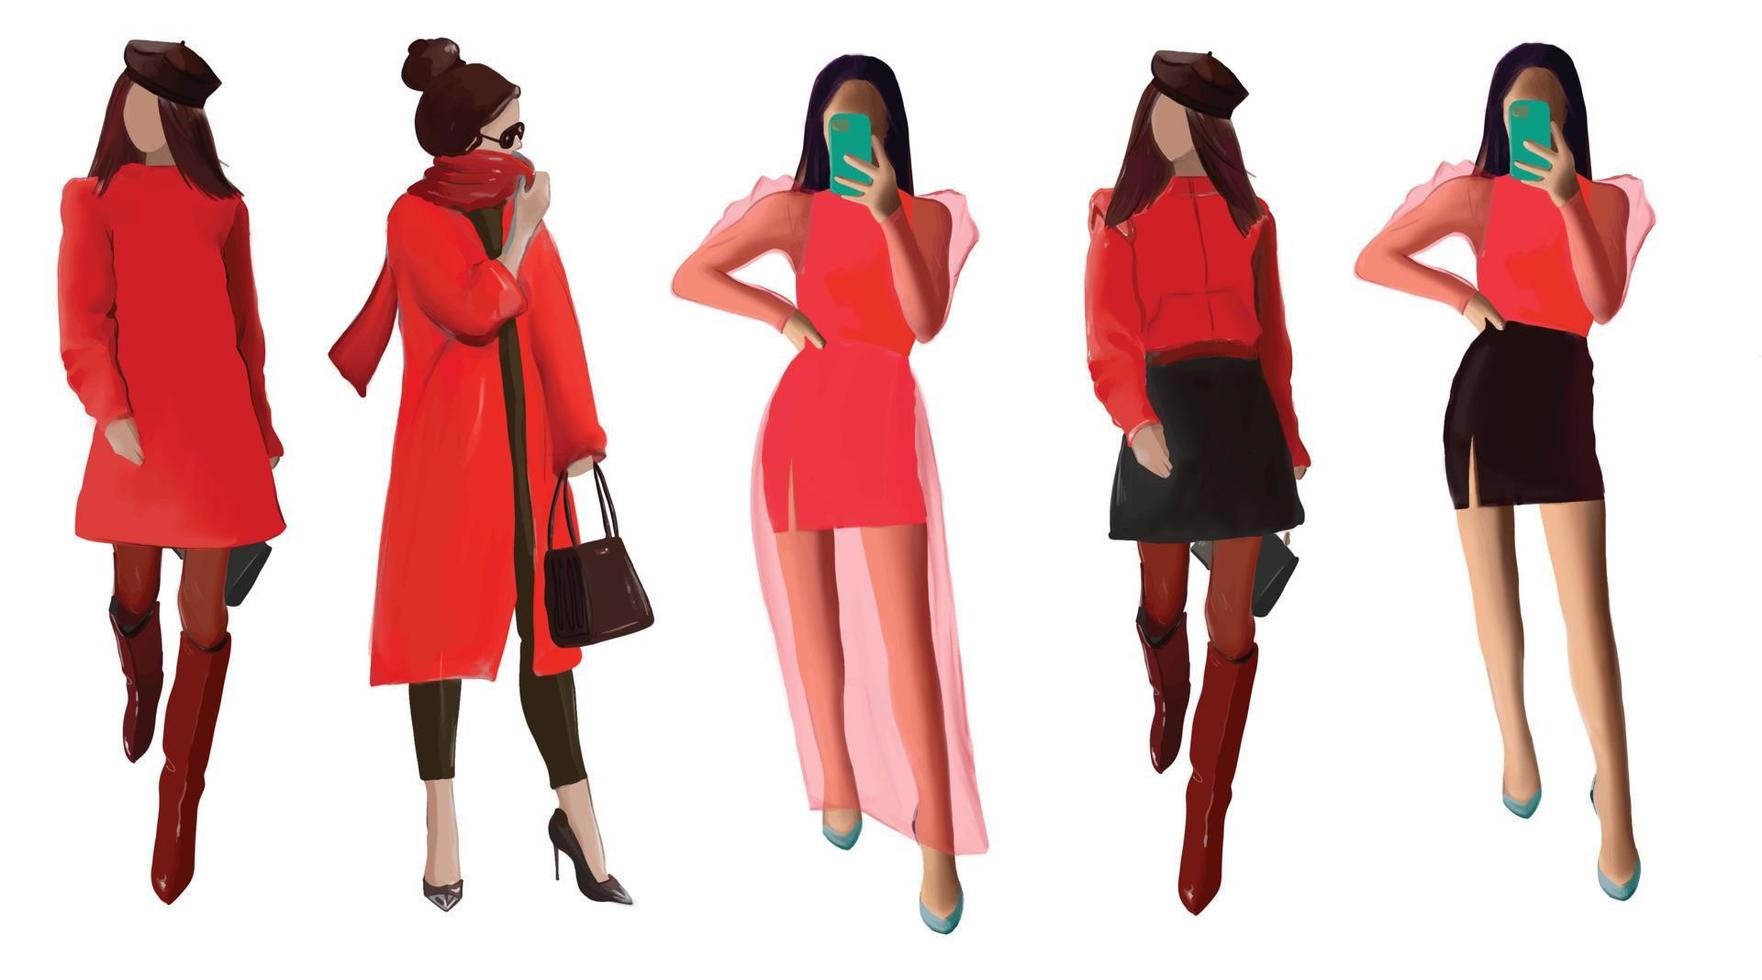 grupp kvinnor i moderiktiga kläder i röd färg, mode flickor, vektorillustration vektor